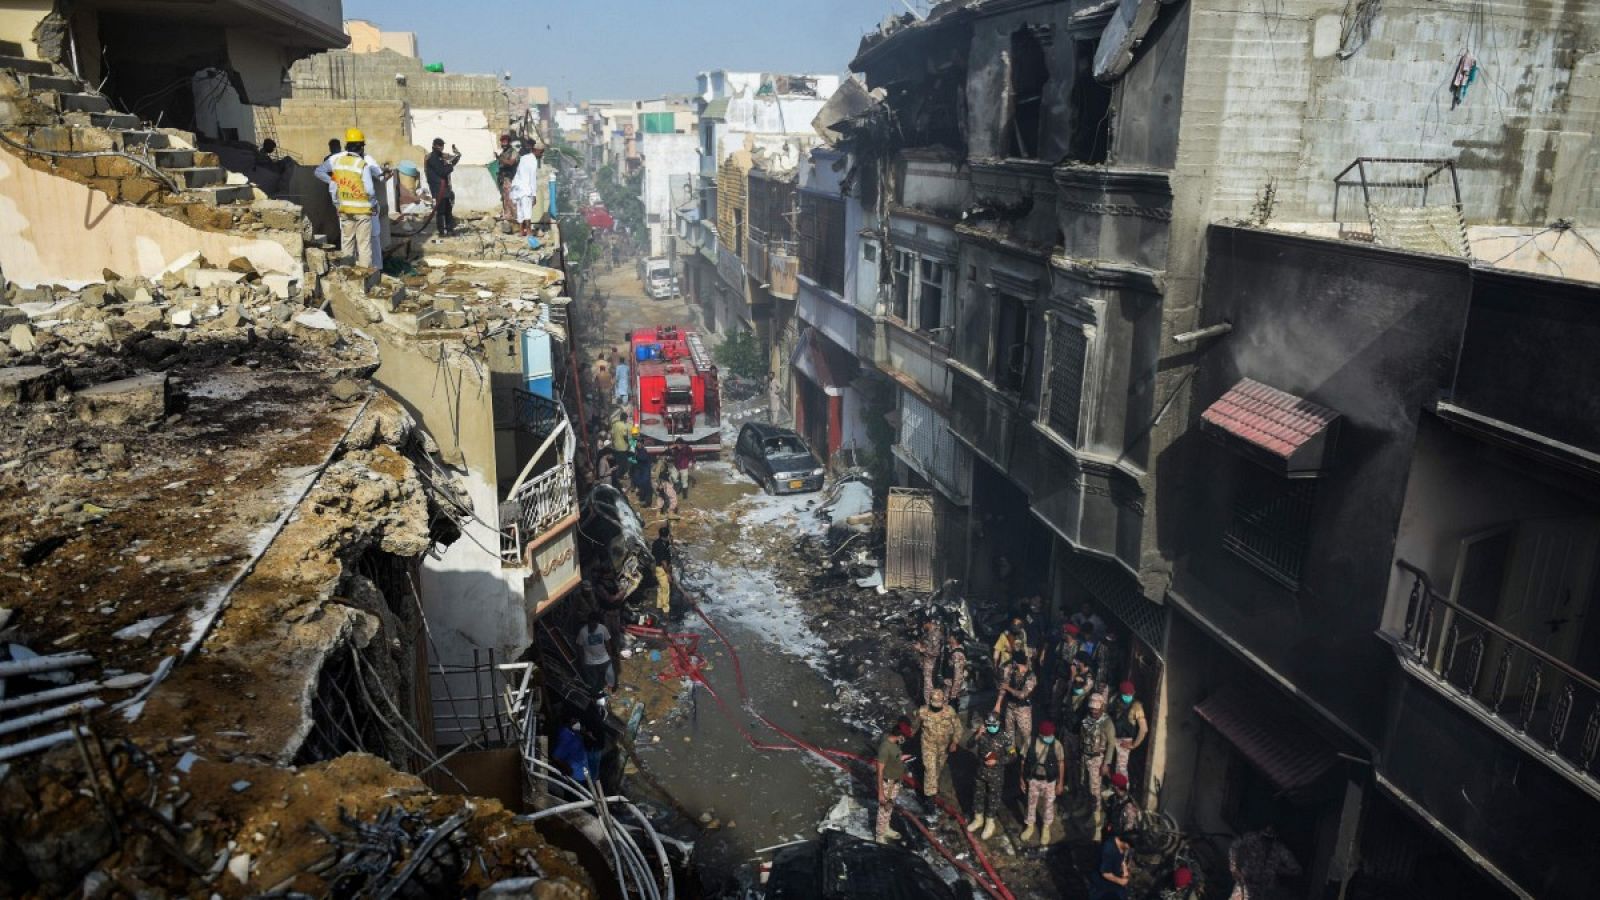 Pakistán | Ascienden a 97 los fallecidos y hay dos supervivientes en el accidente aéreo en Karachi